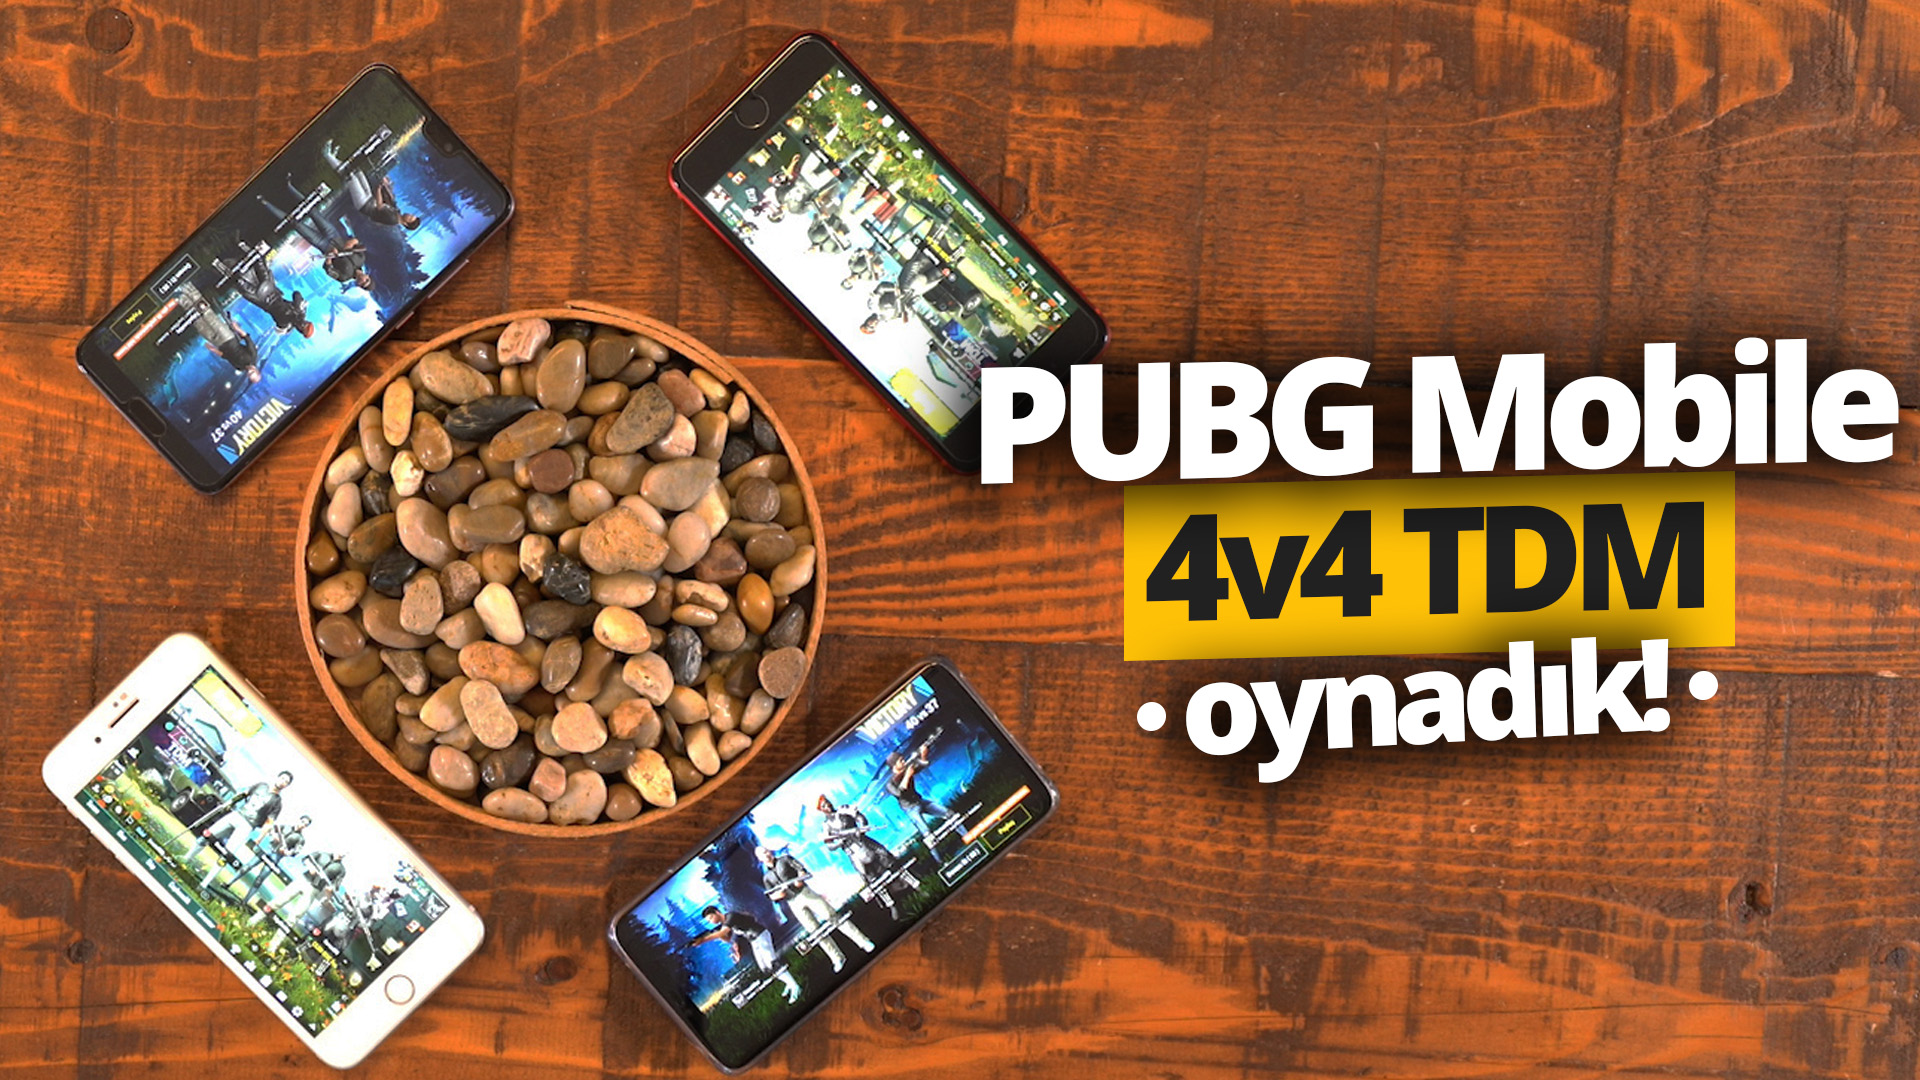 PUBG Mobile 4v4 TDM modu oynadık! (Video)